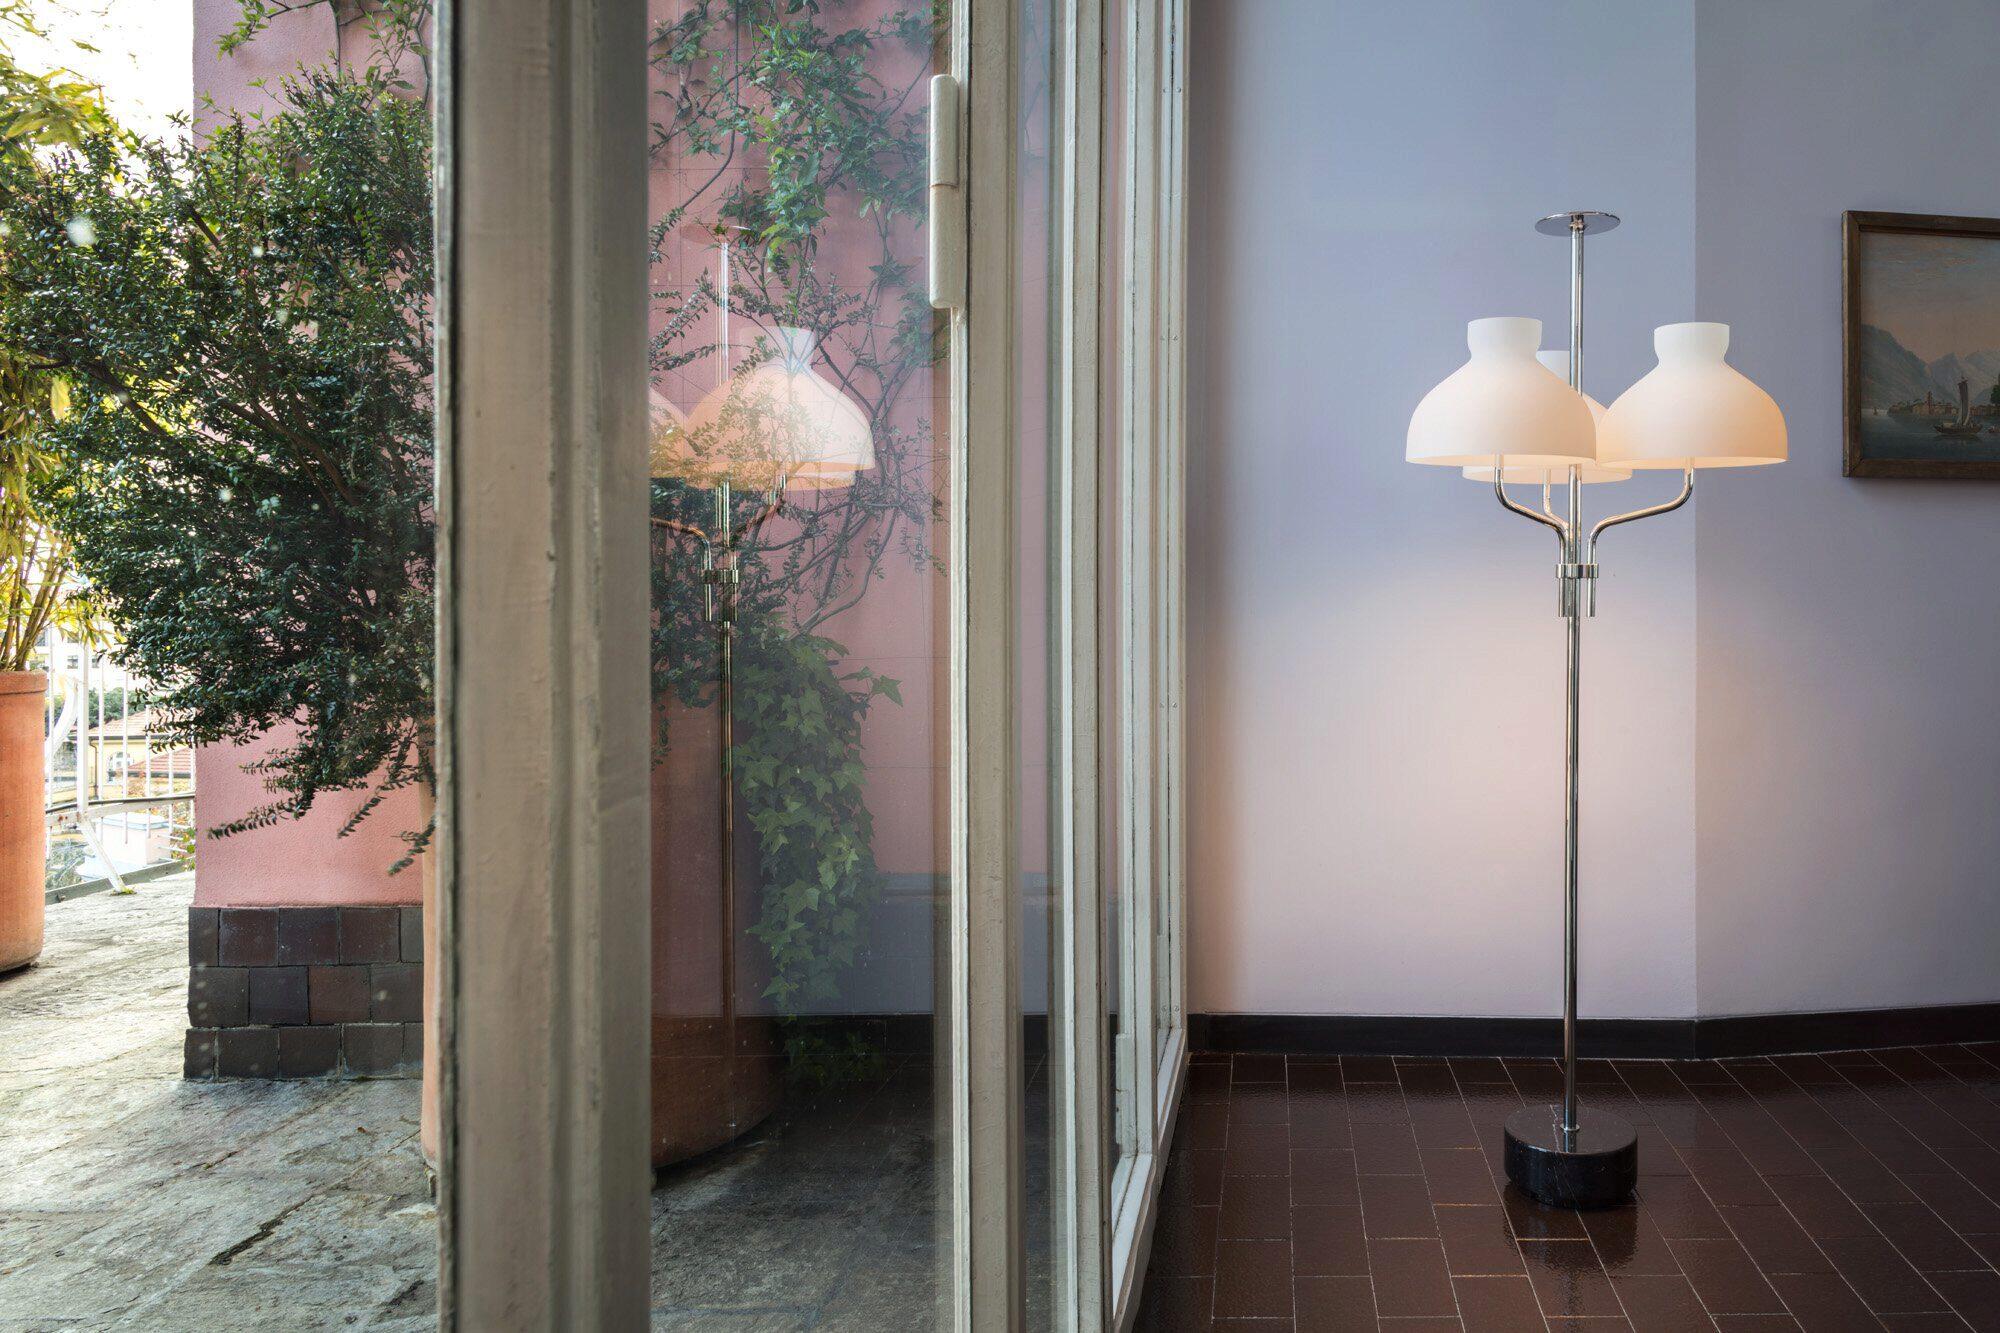 Ignazio Gardella 'Arenzano Tre Fiamme' Floor Lamp in Black Marble and Chrome.

Ignazio Gardella was one of the leading figures in Italian twentieth-century architecture. A graduate of the Politecnico di Milano, he founded Azucena with Luigi Caccia